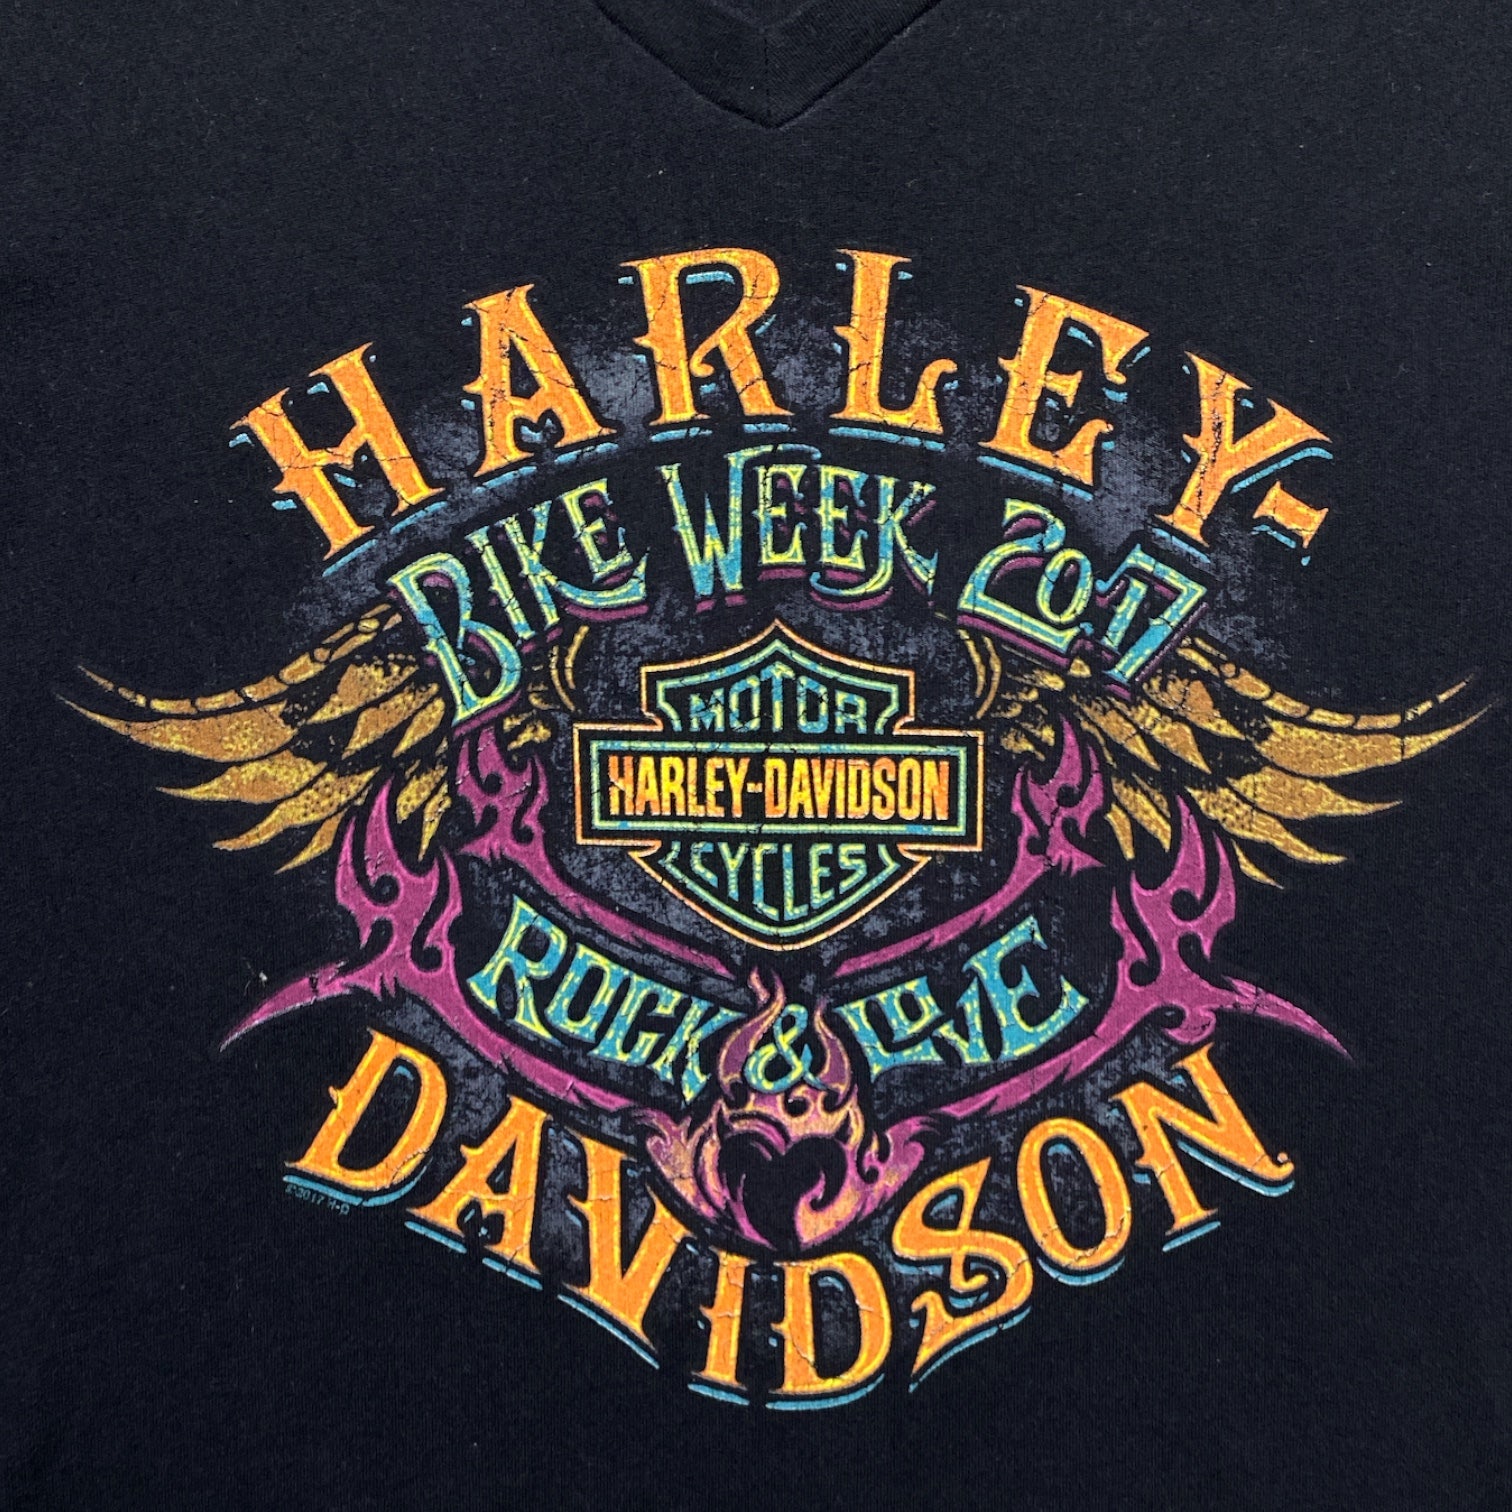 HARLEY-DAVIDSON MOTOR CYCLES bike week 2017 Tee wings ROCK＆RIDE Made in USA